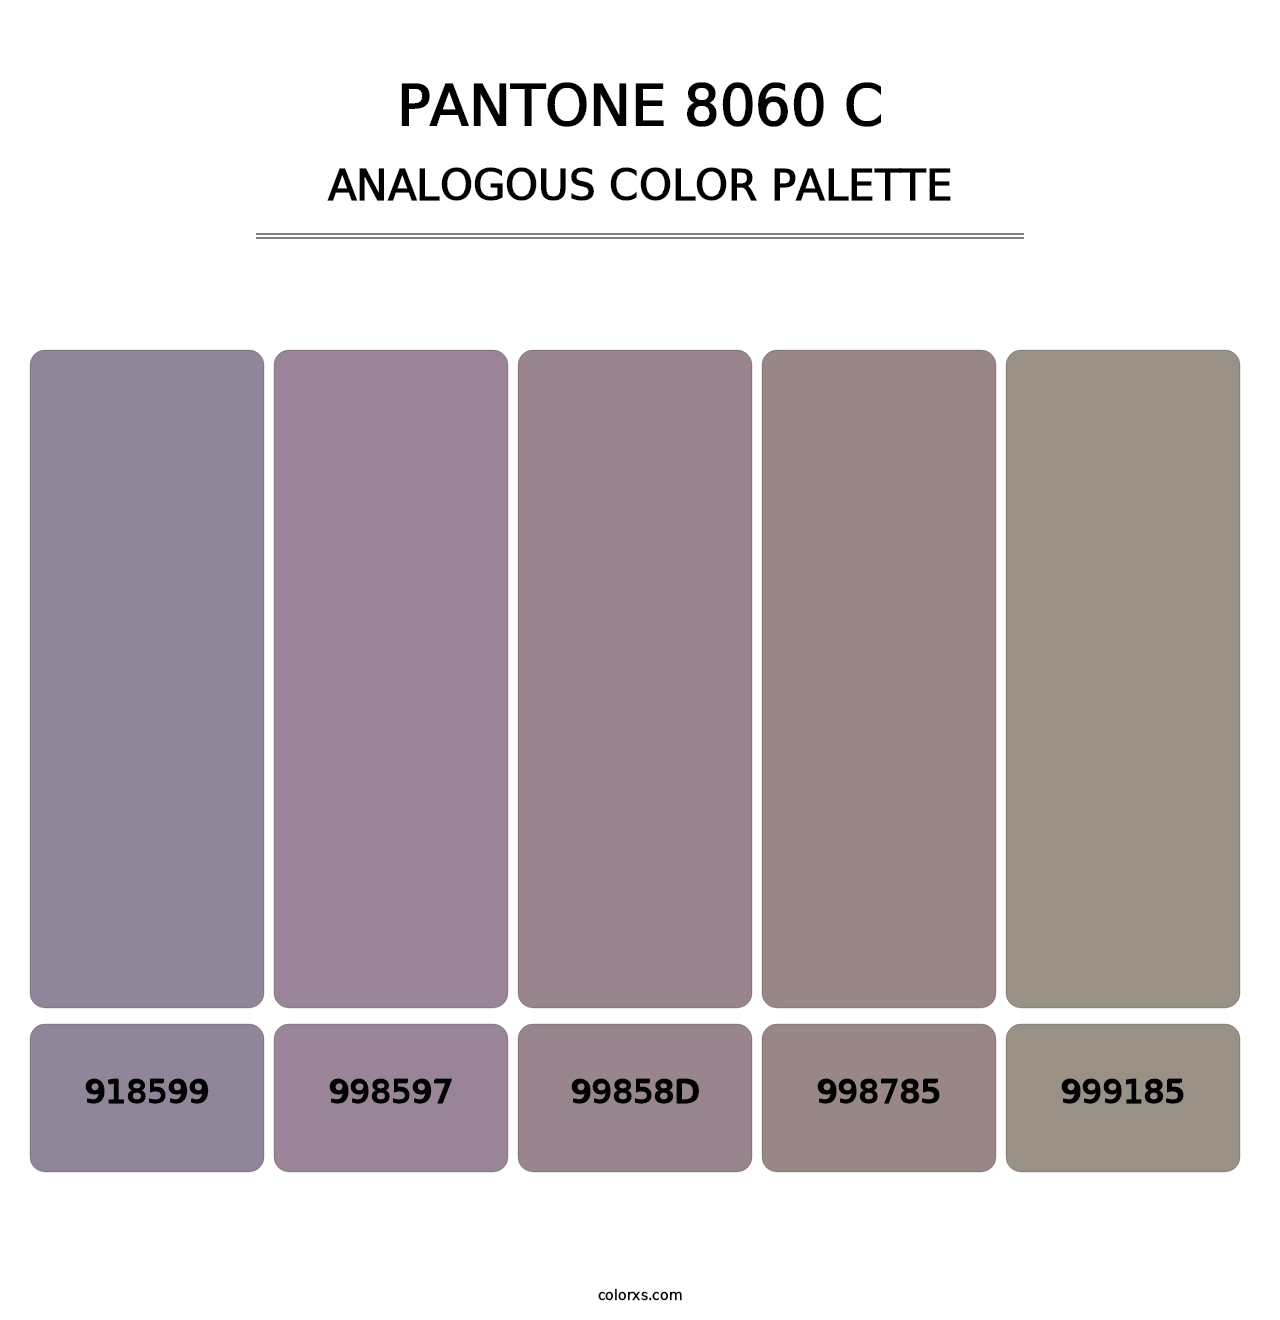 PANTONE 8060 C - Analogous Color Palette